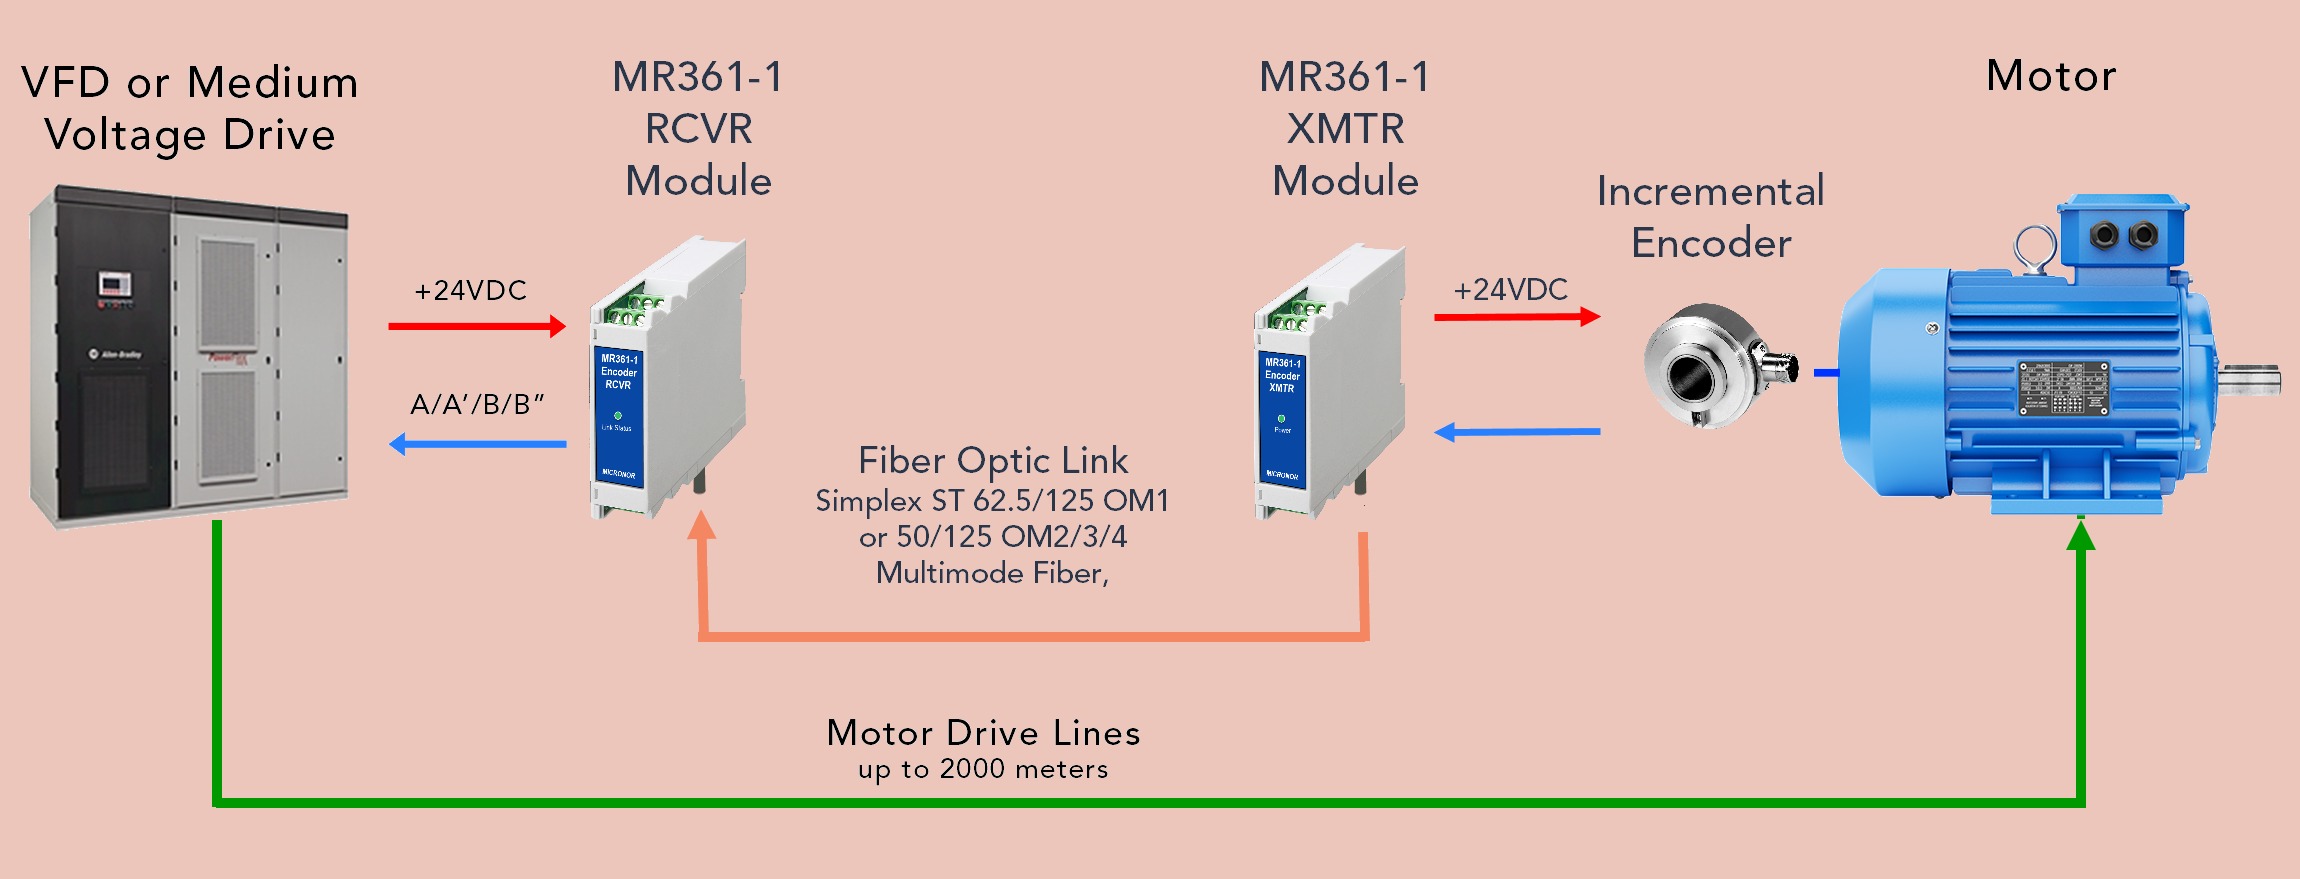 MR361-1 FO Extender System for EM Incremental Encoders